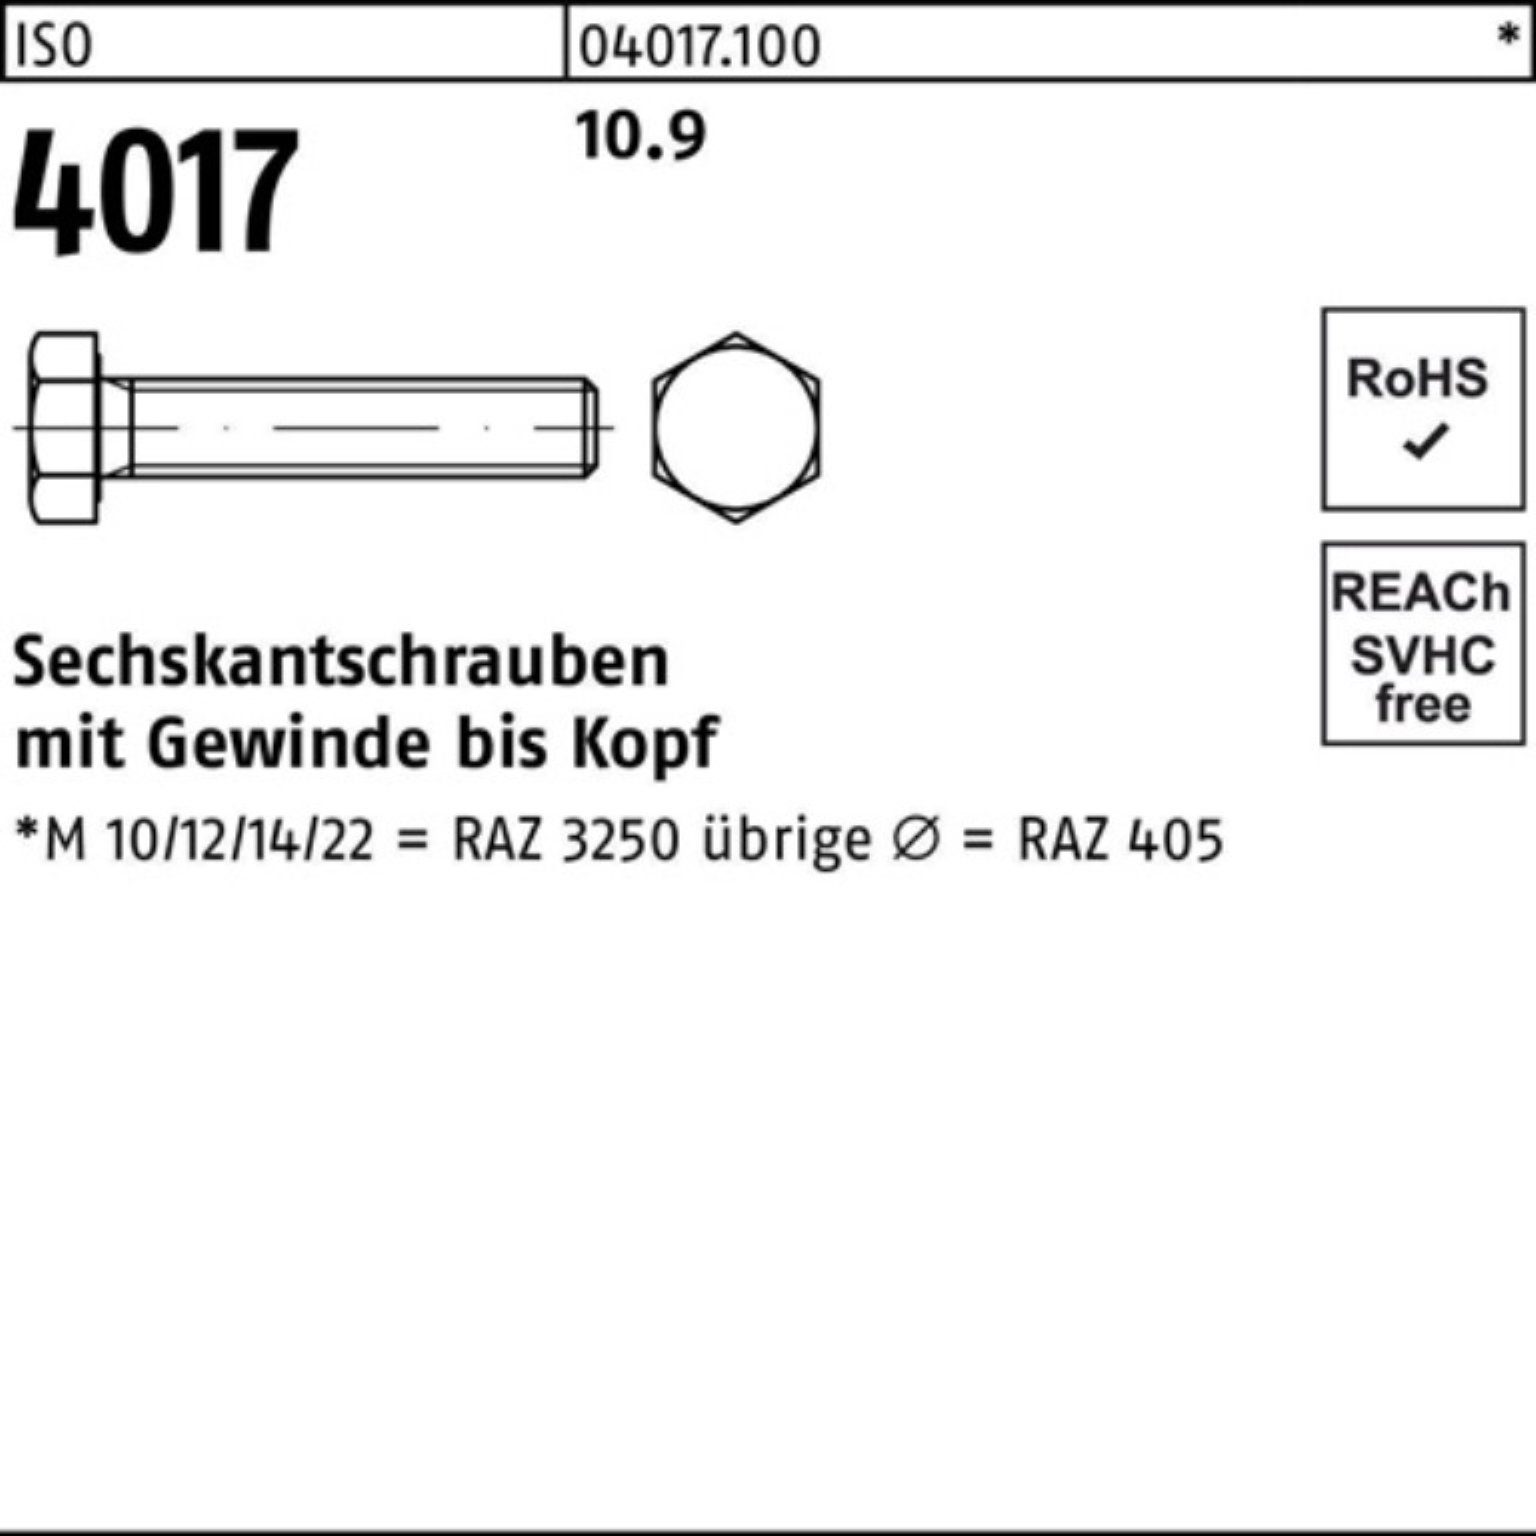 Bufab Sechskantschraube 100er Pack Sechskantschraube 4017 ISO 10.9 Stück M16x 25 80 40 VG ISO